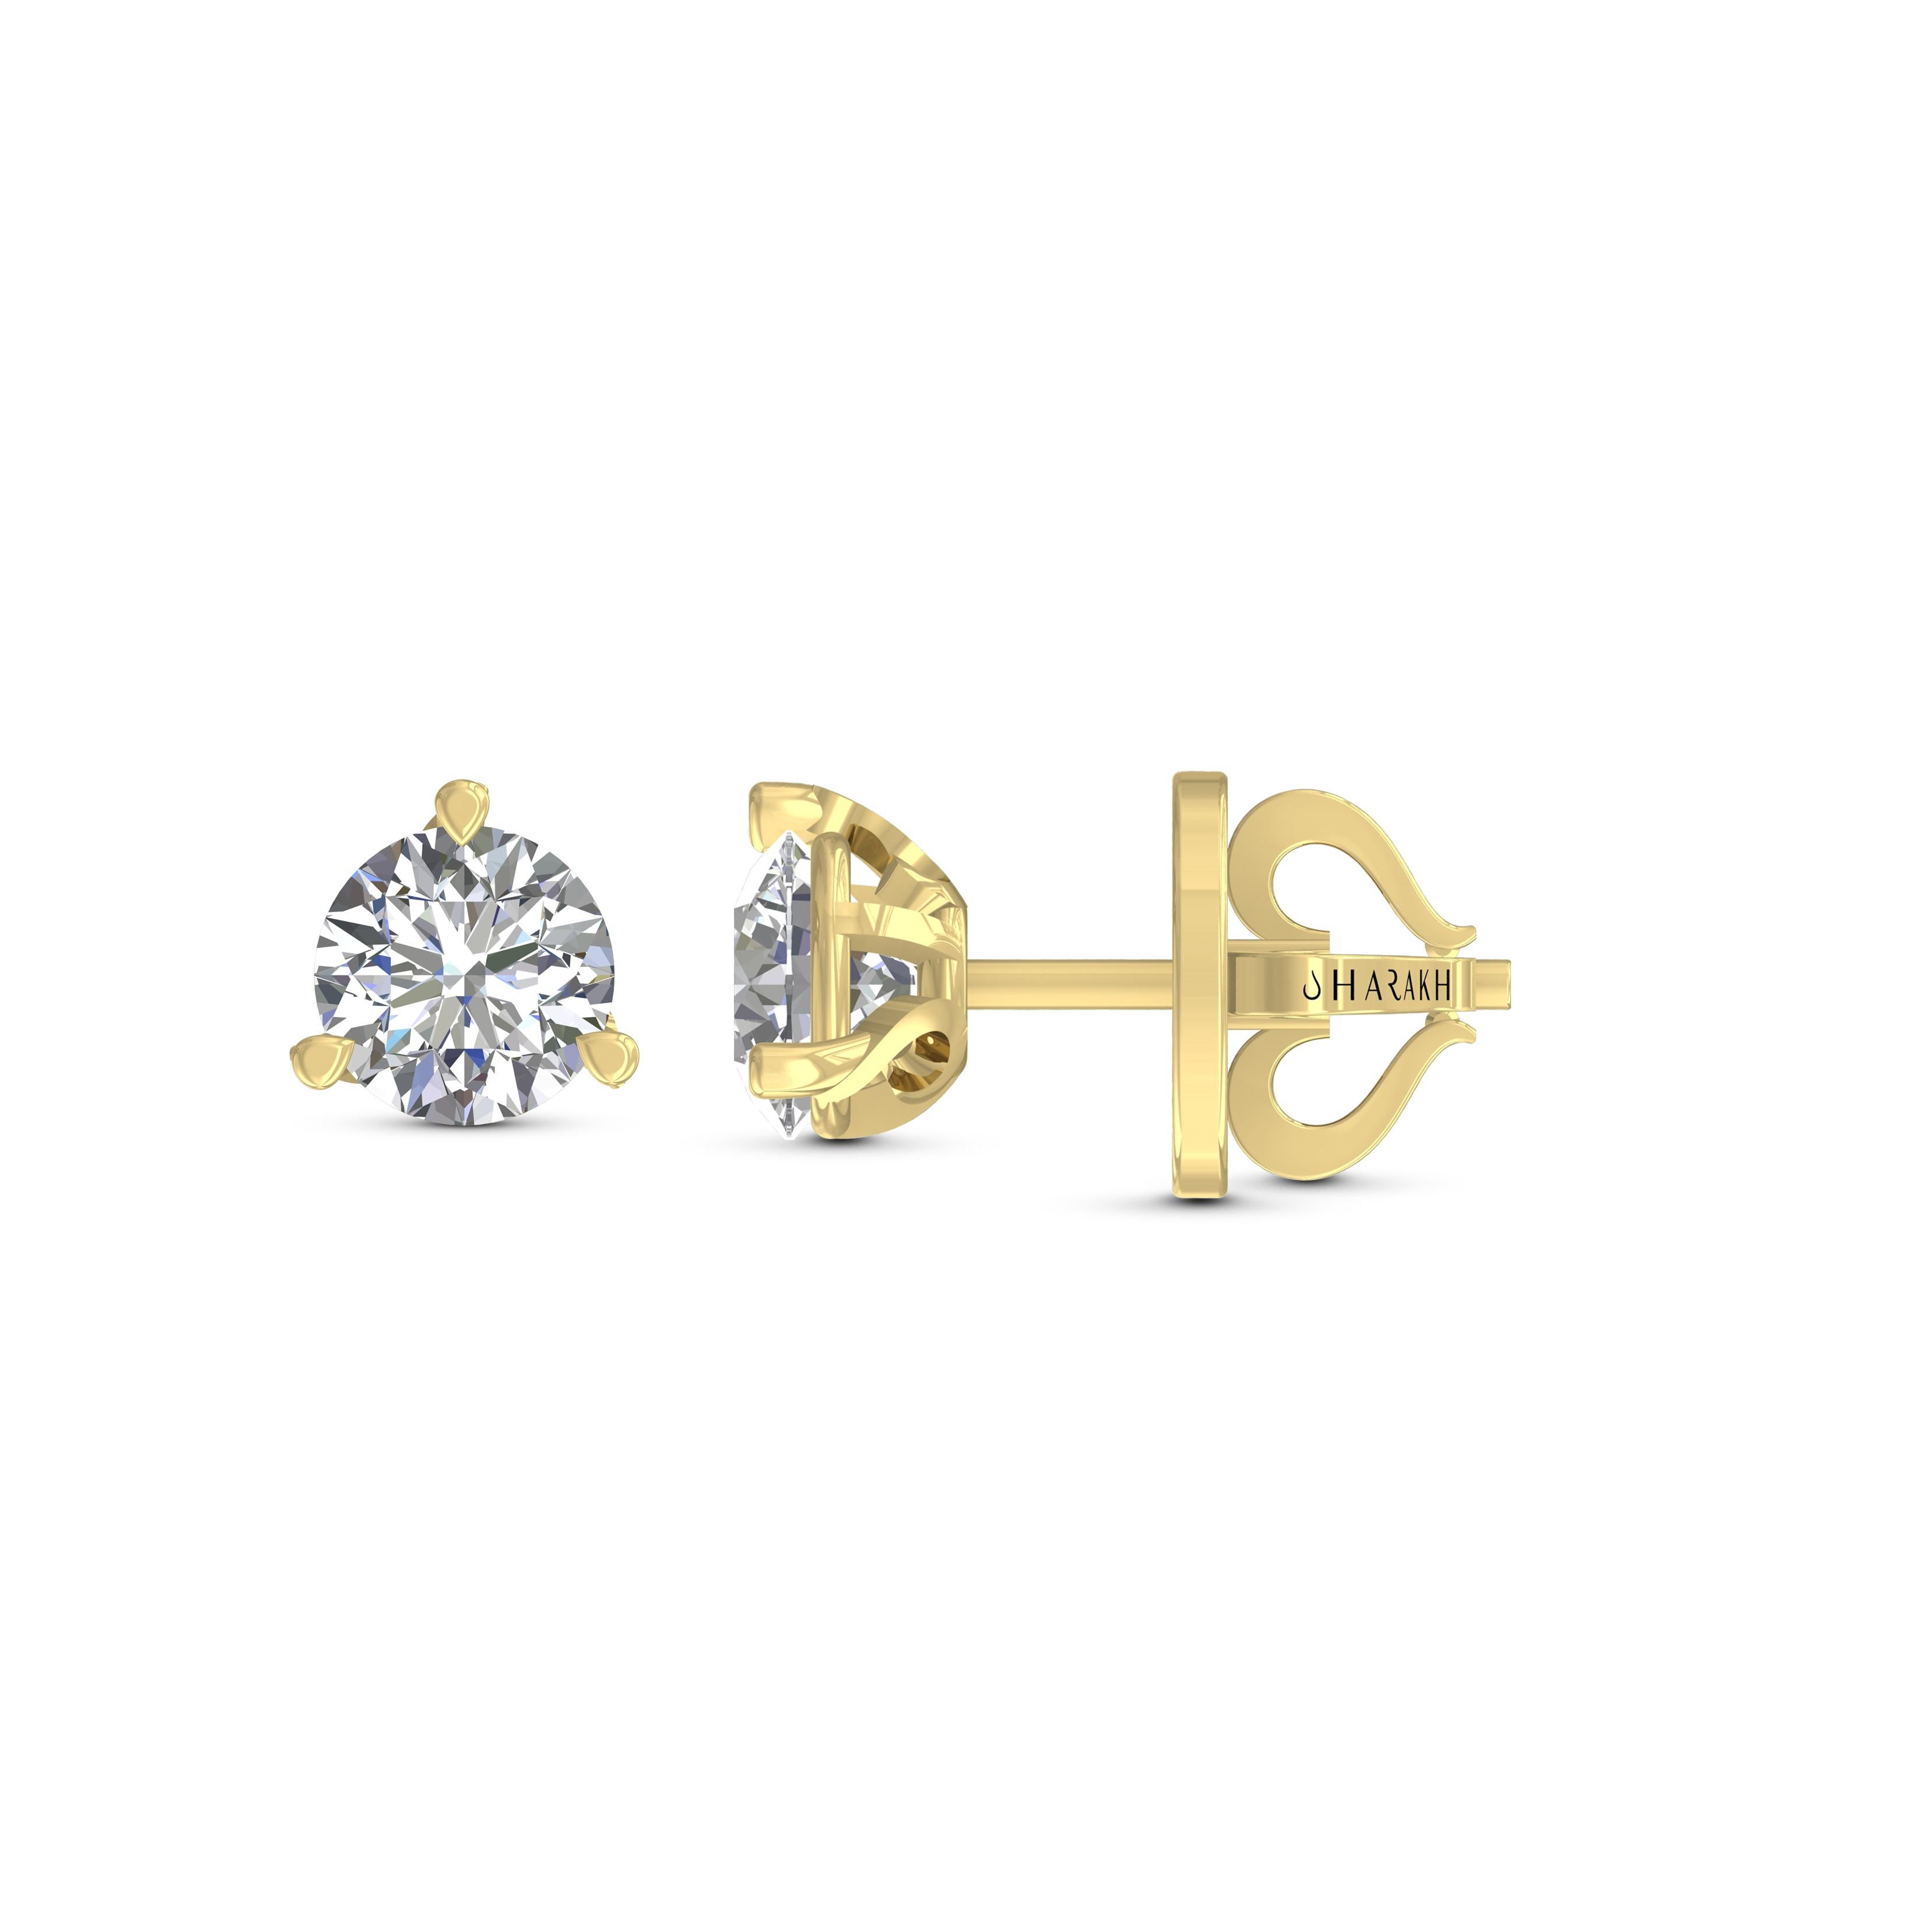 Diese klassischen, GIA-zertifizierten Diamantohrstecker präsentieren ein Paar perfekt aufeinander abgestimmter Diamanten mit einem Gesamtgewicht von 2,00 Karat. Sie werden aus 18 Karat Gelbgold gefertigt und sind auch in Weiß- und Roségold